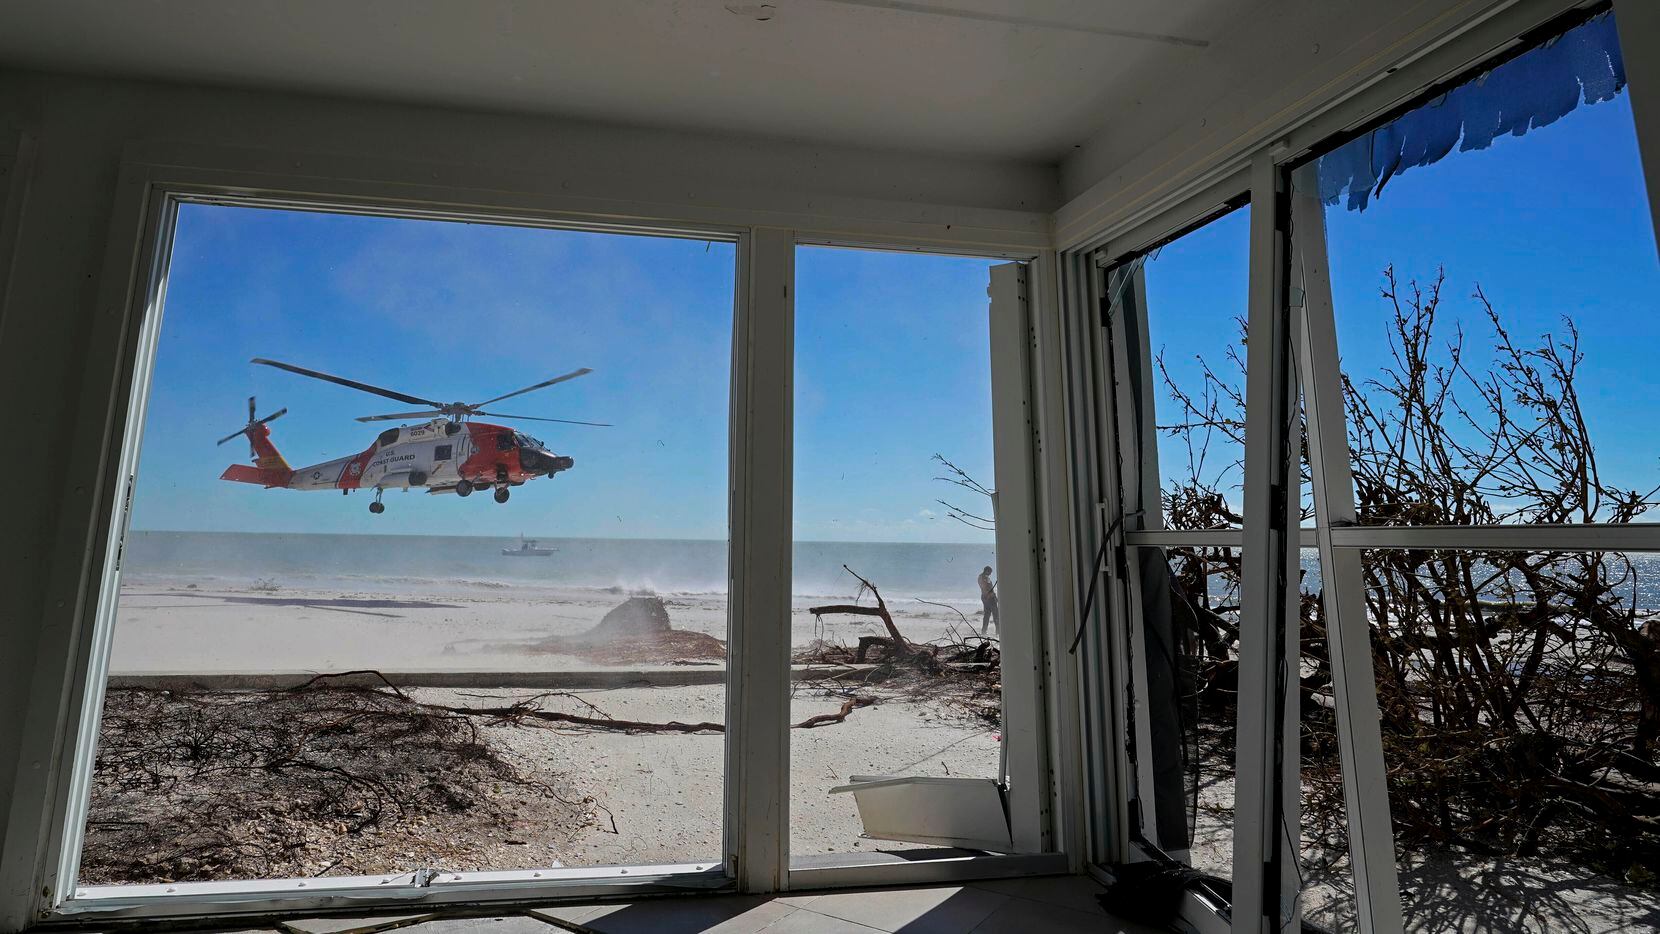 Un helicóptero de la Guardia Costera de Estados Unidos visto desde el interiro de una casa...